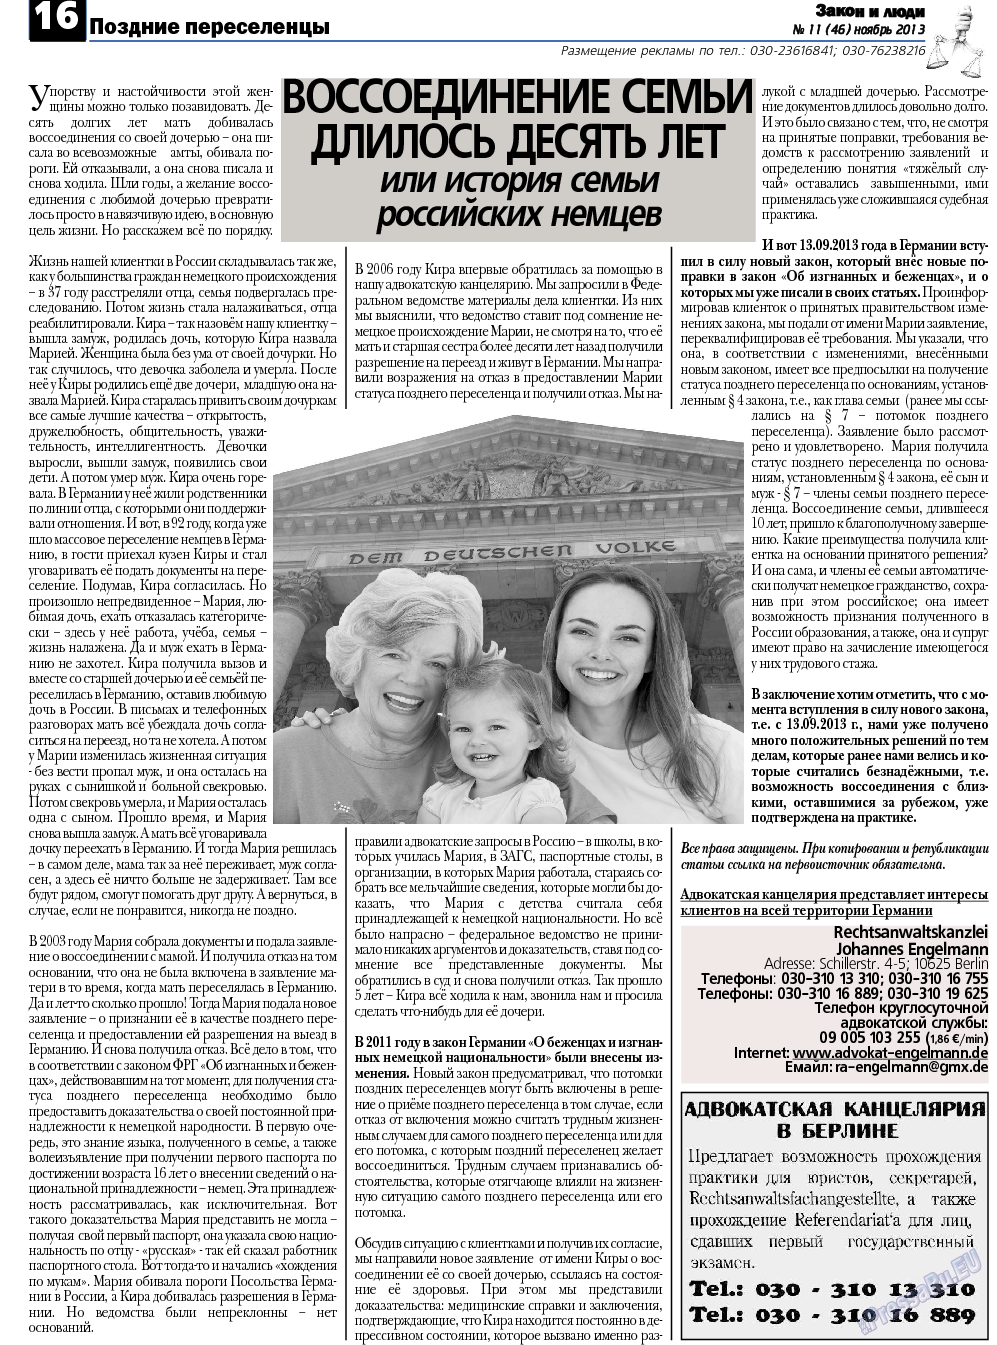 Закон и люди, газета. 2013 №11 стр.16